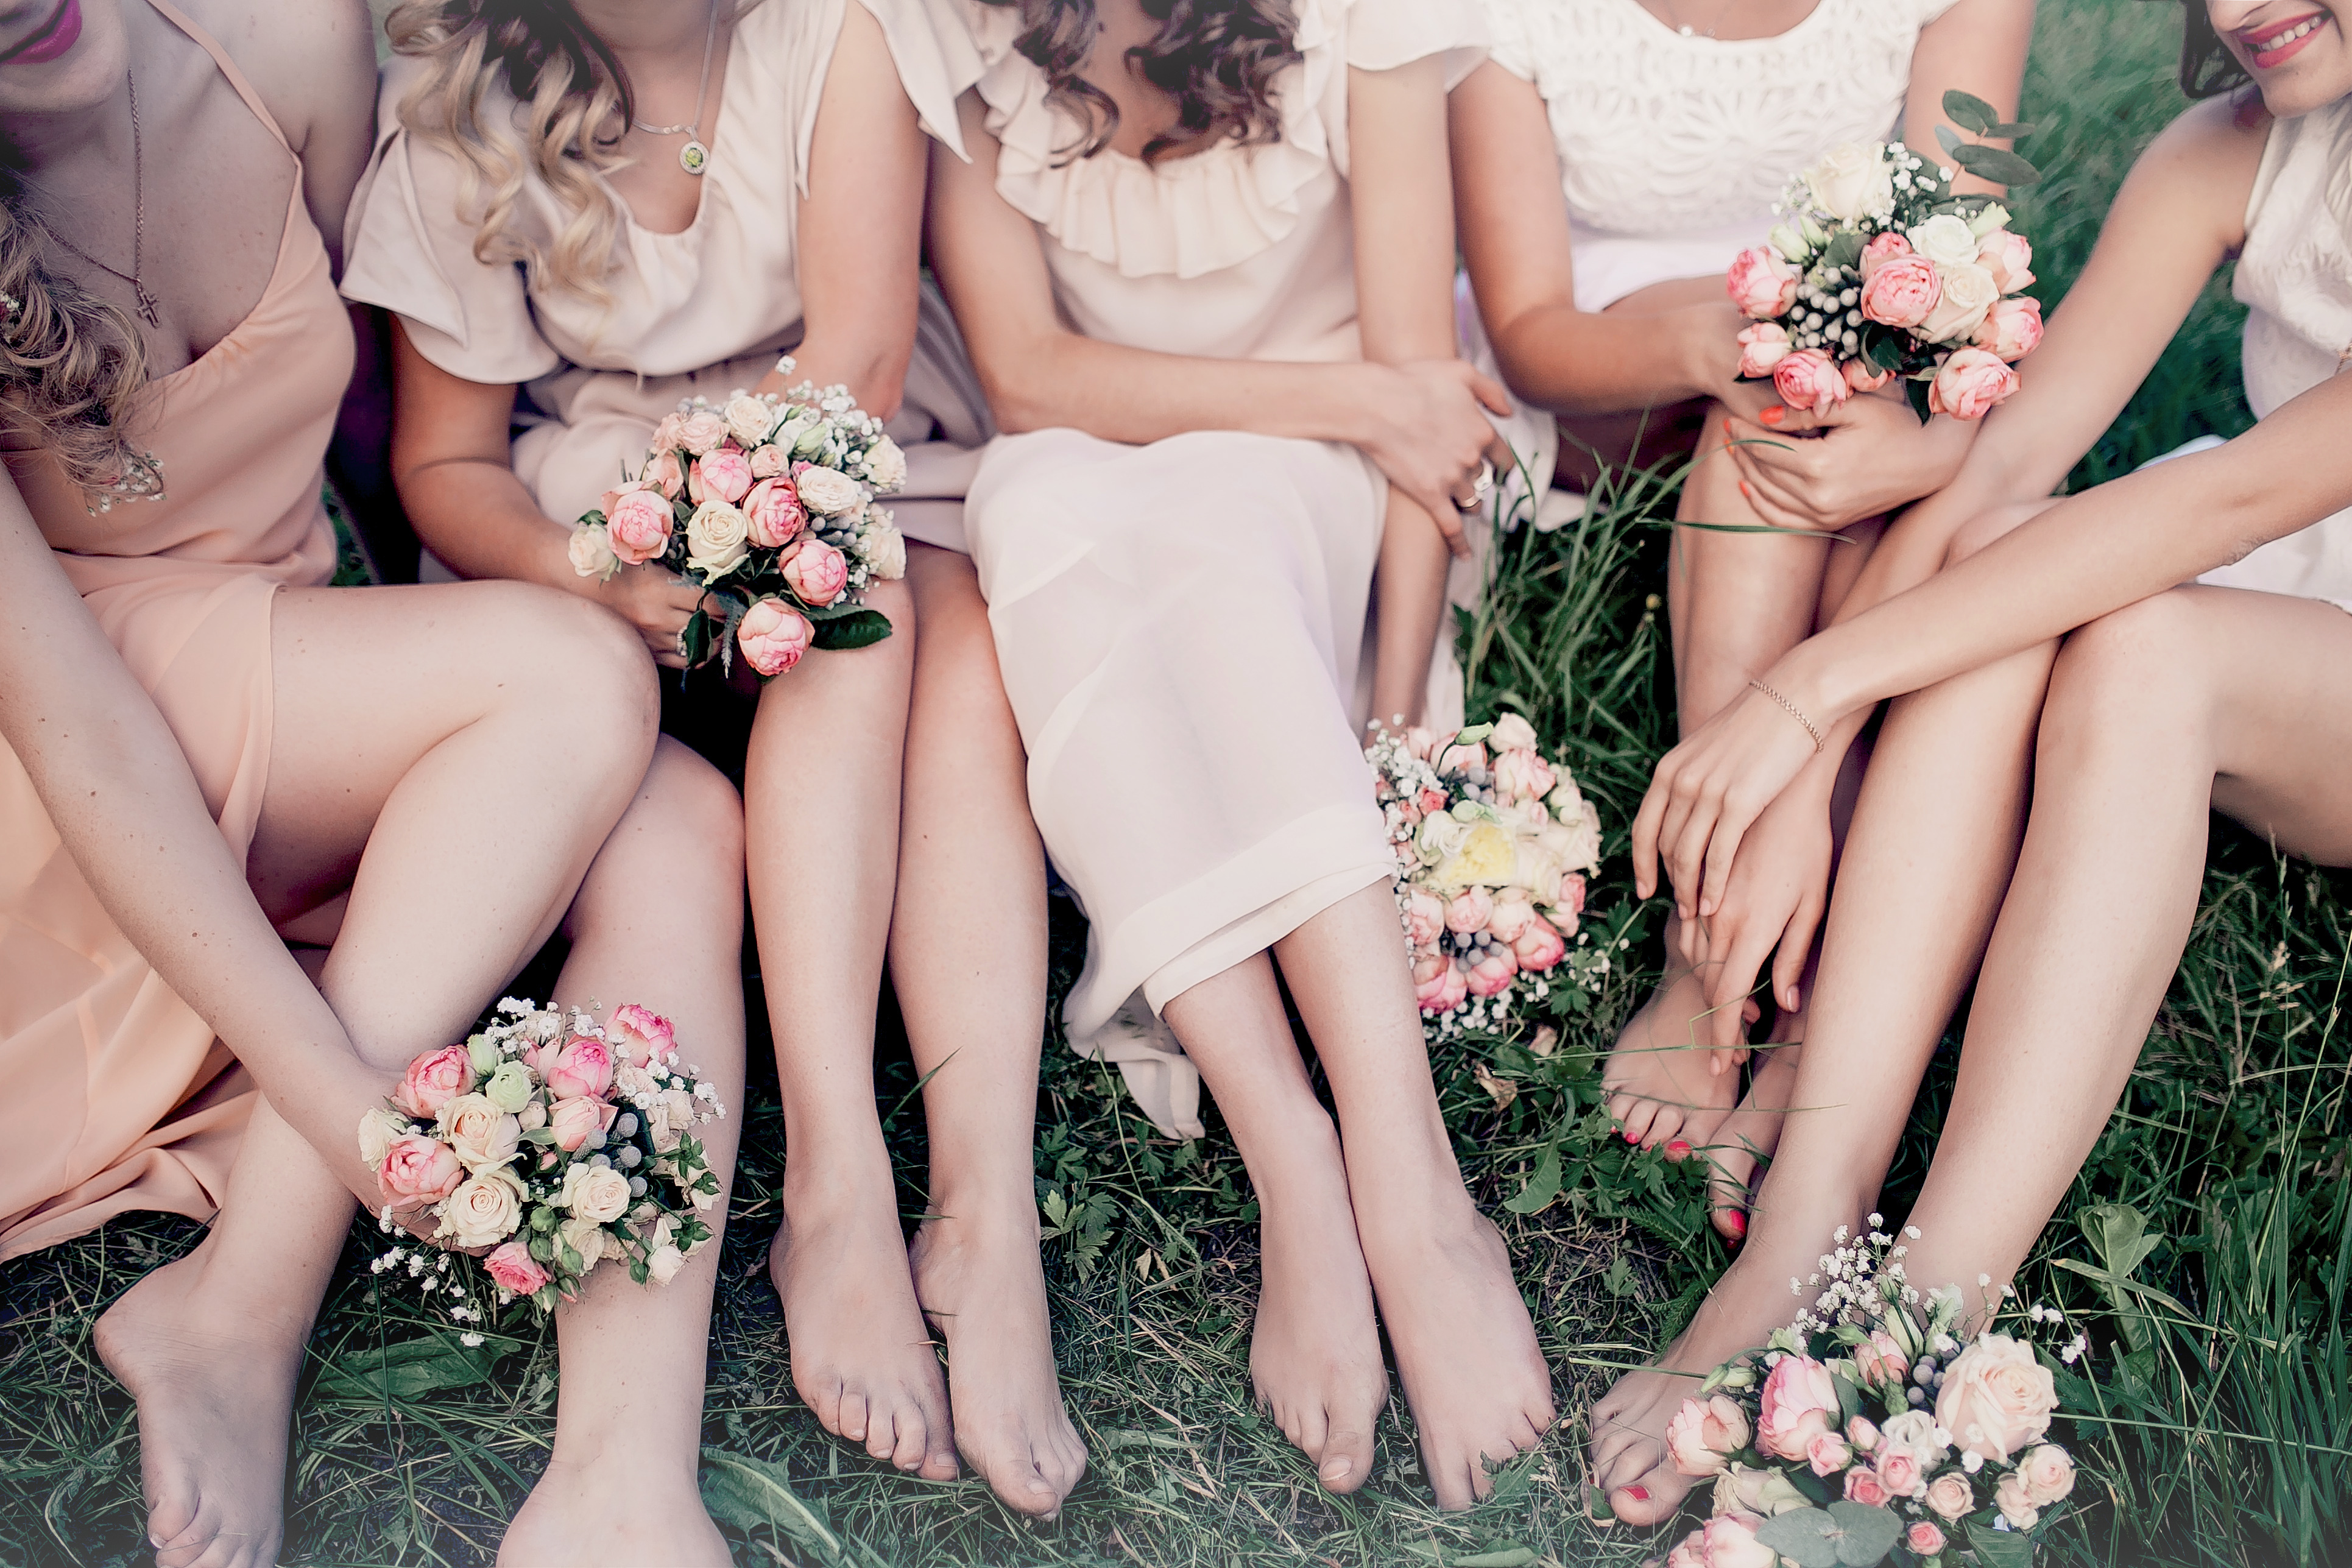 Mujeres sentadas juntas | Foto: Shutterstock